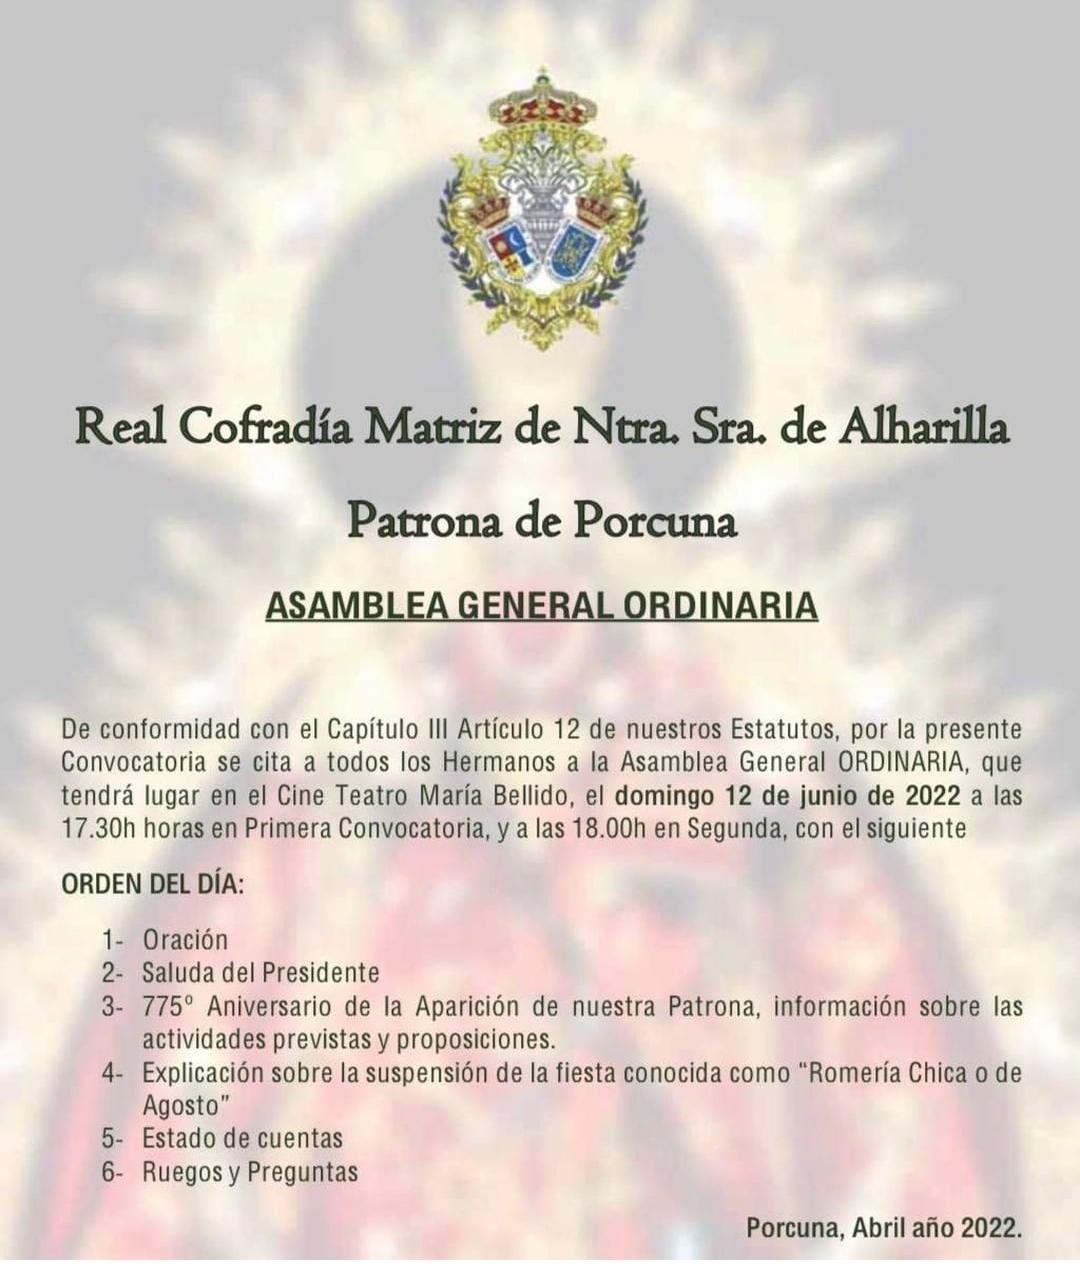 Asamblea General Cofradía de Alharilla